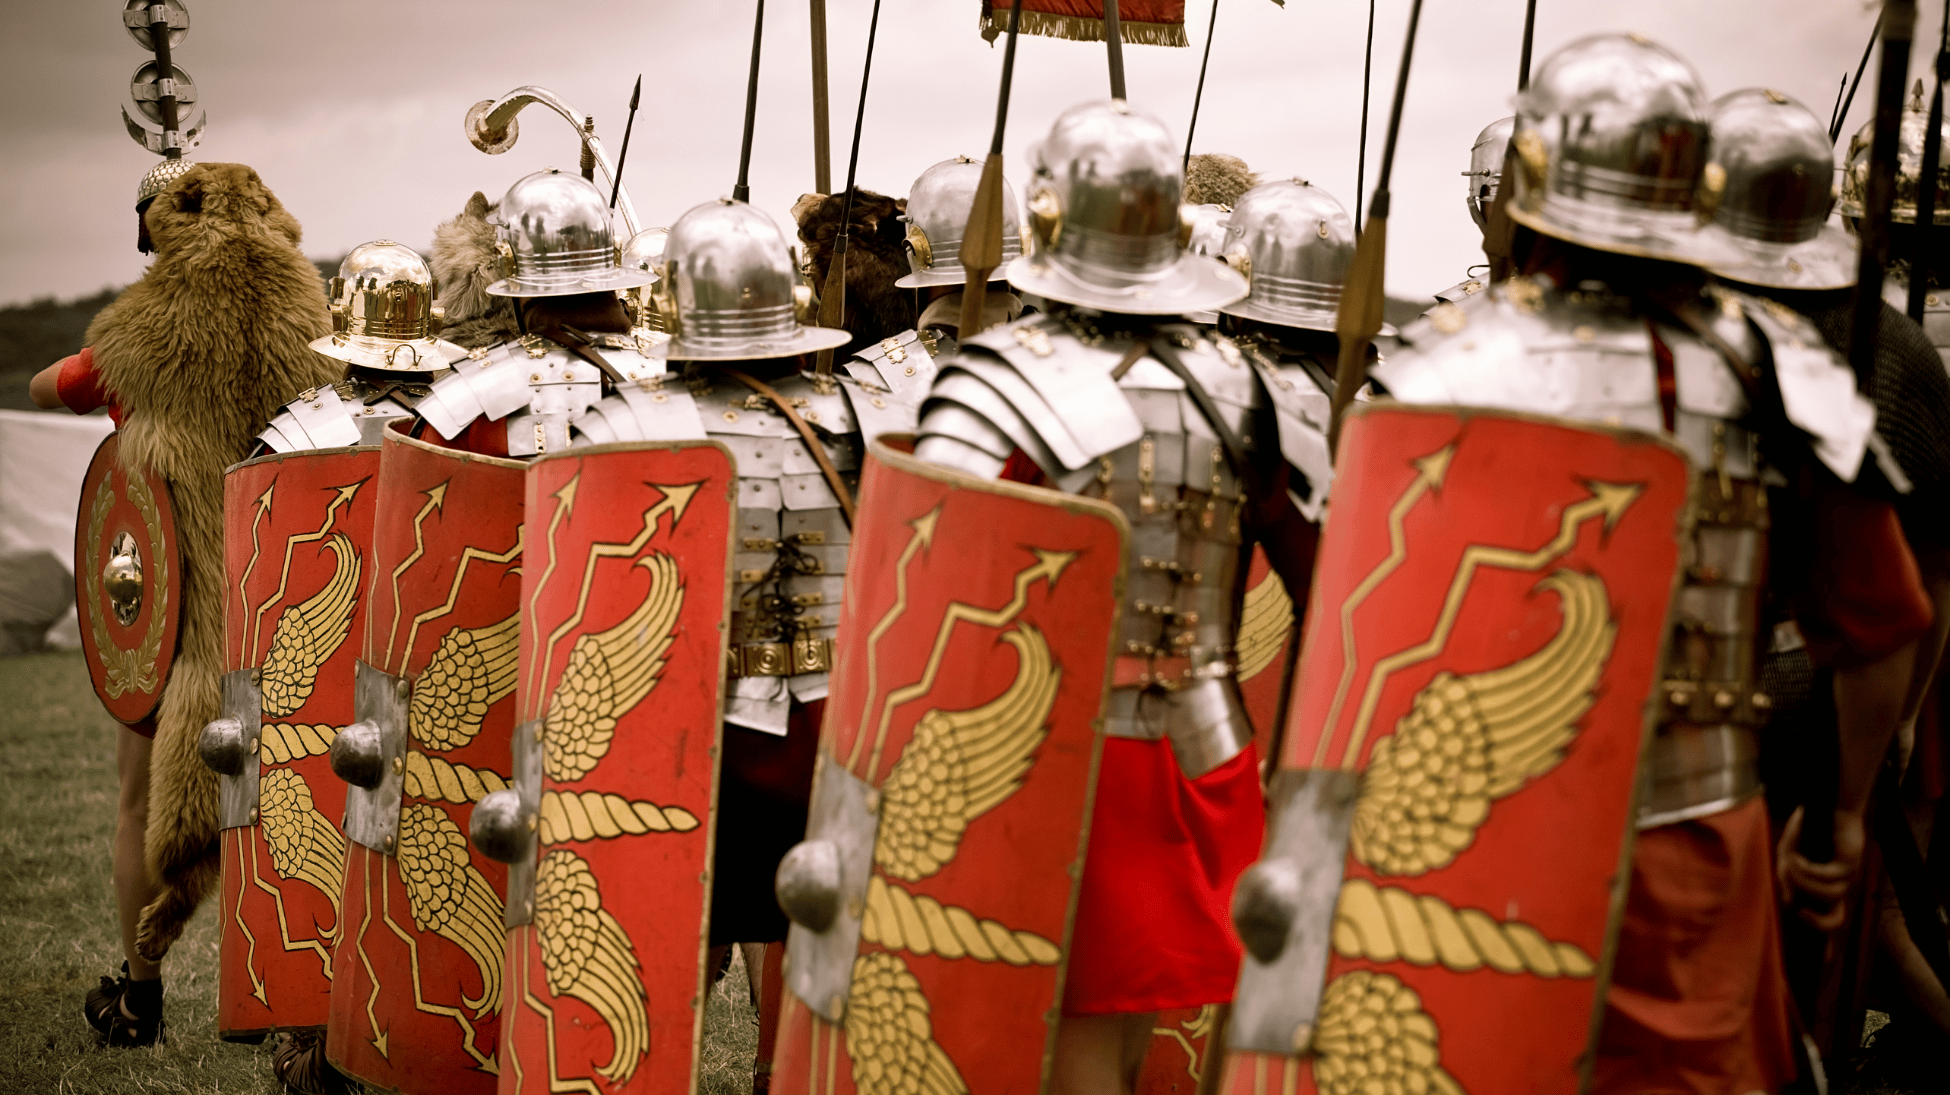 Войско римлян. Римские войска. Армия римлян. Римский легионер. Римское войско.